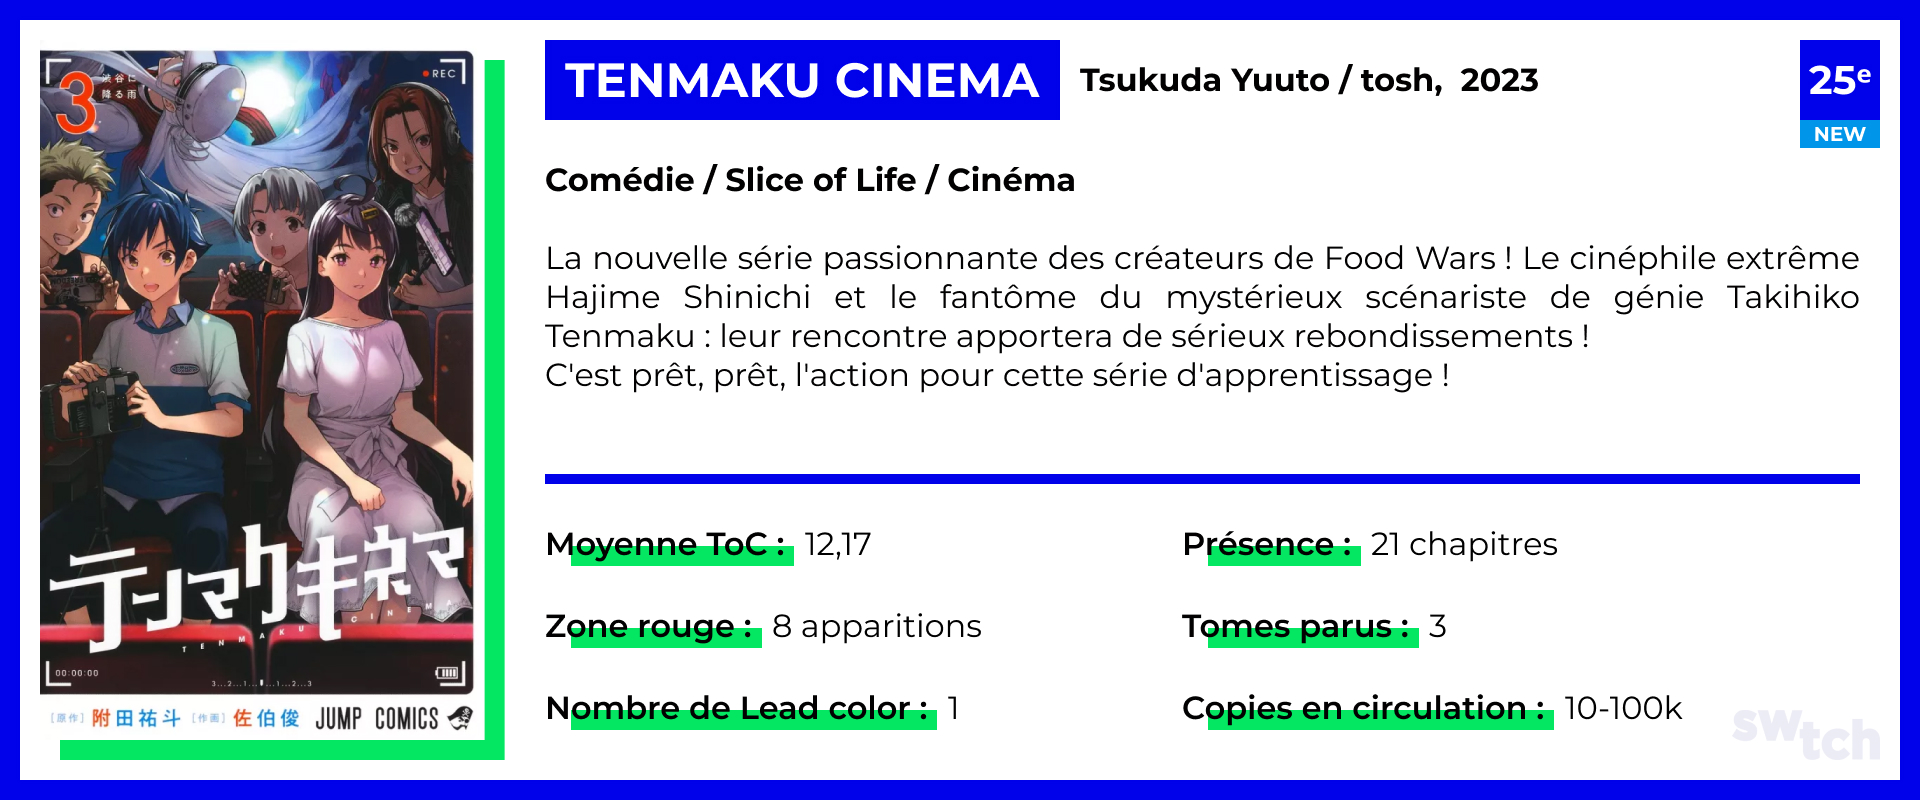 Tenmaku Cinema